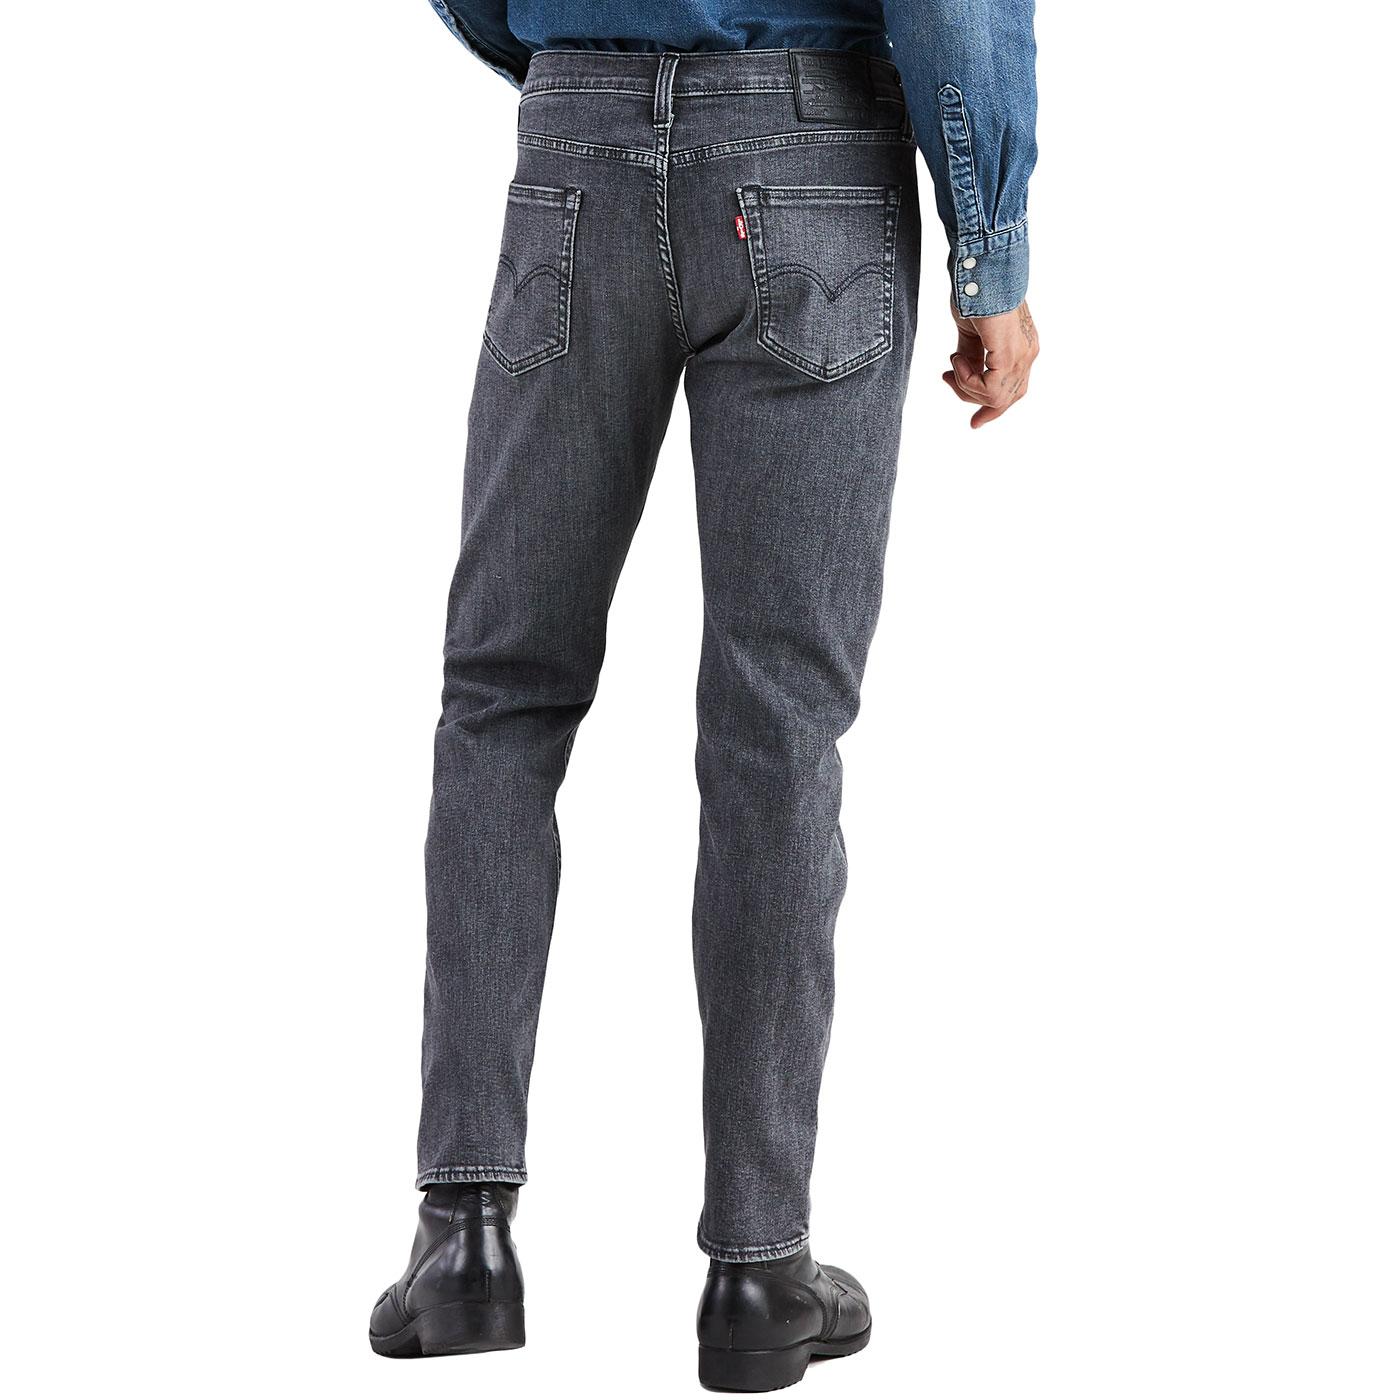 levis 502 grey jeans